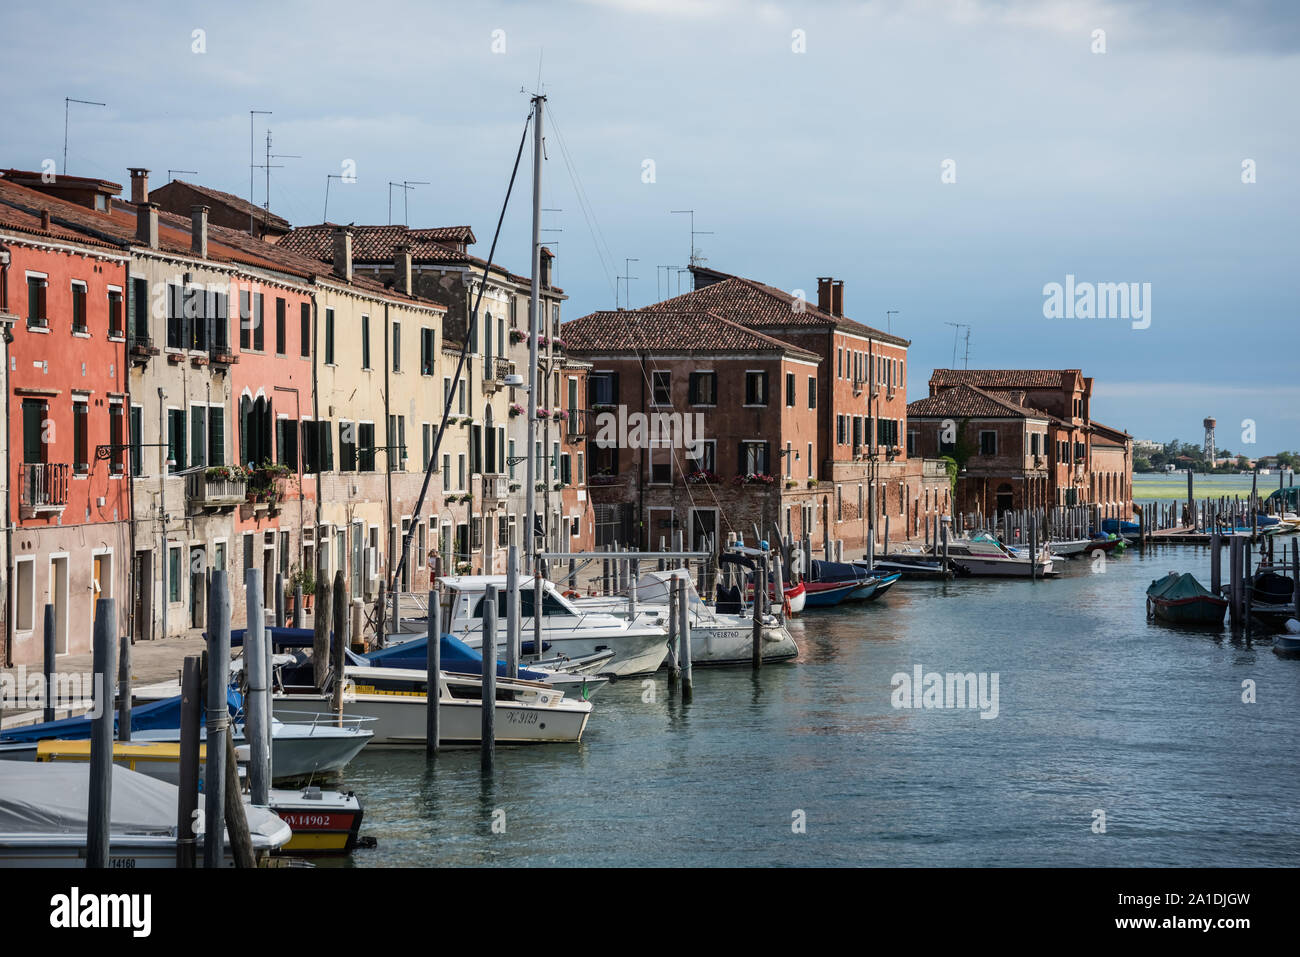 Venedig, Stadtteil Giudecca - Venice, Giudecca Quarter Stock Photo